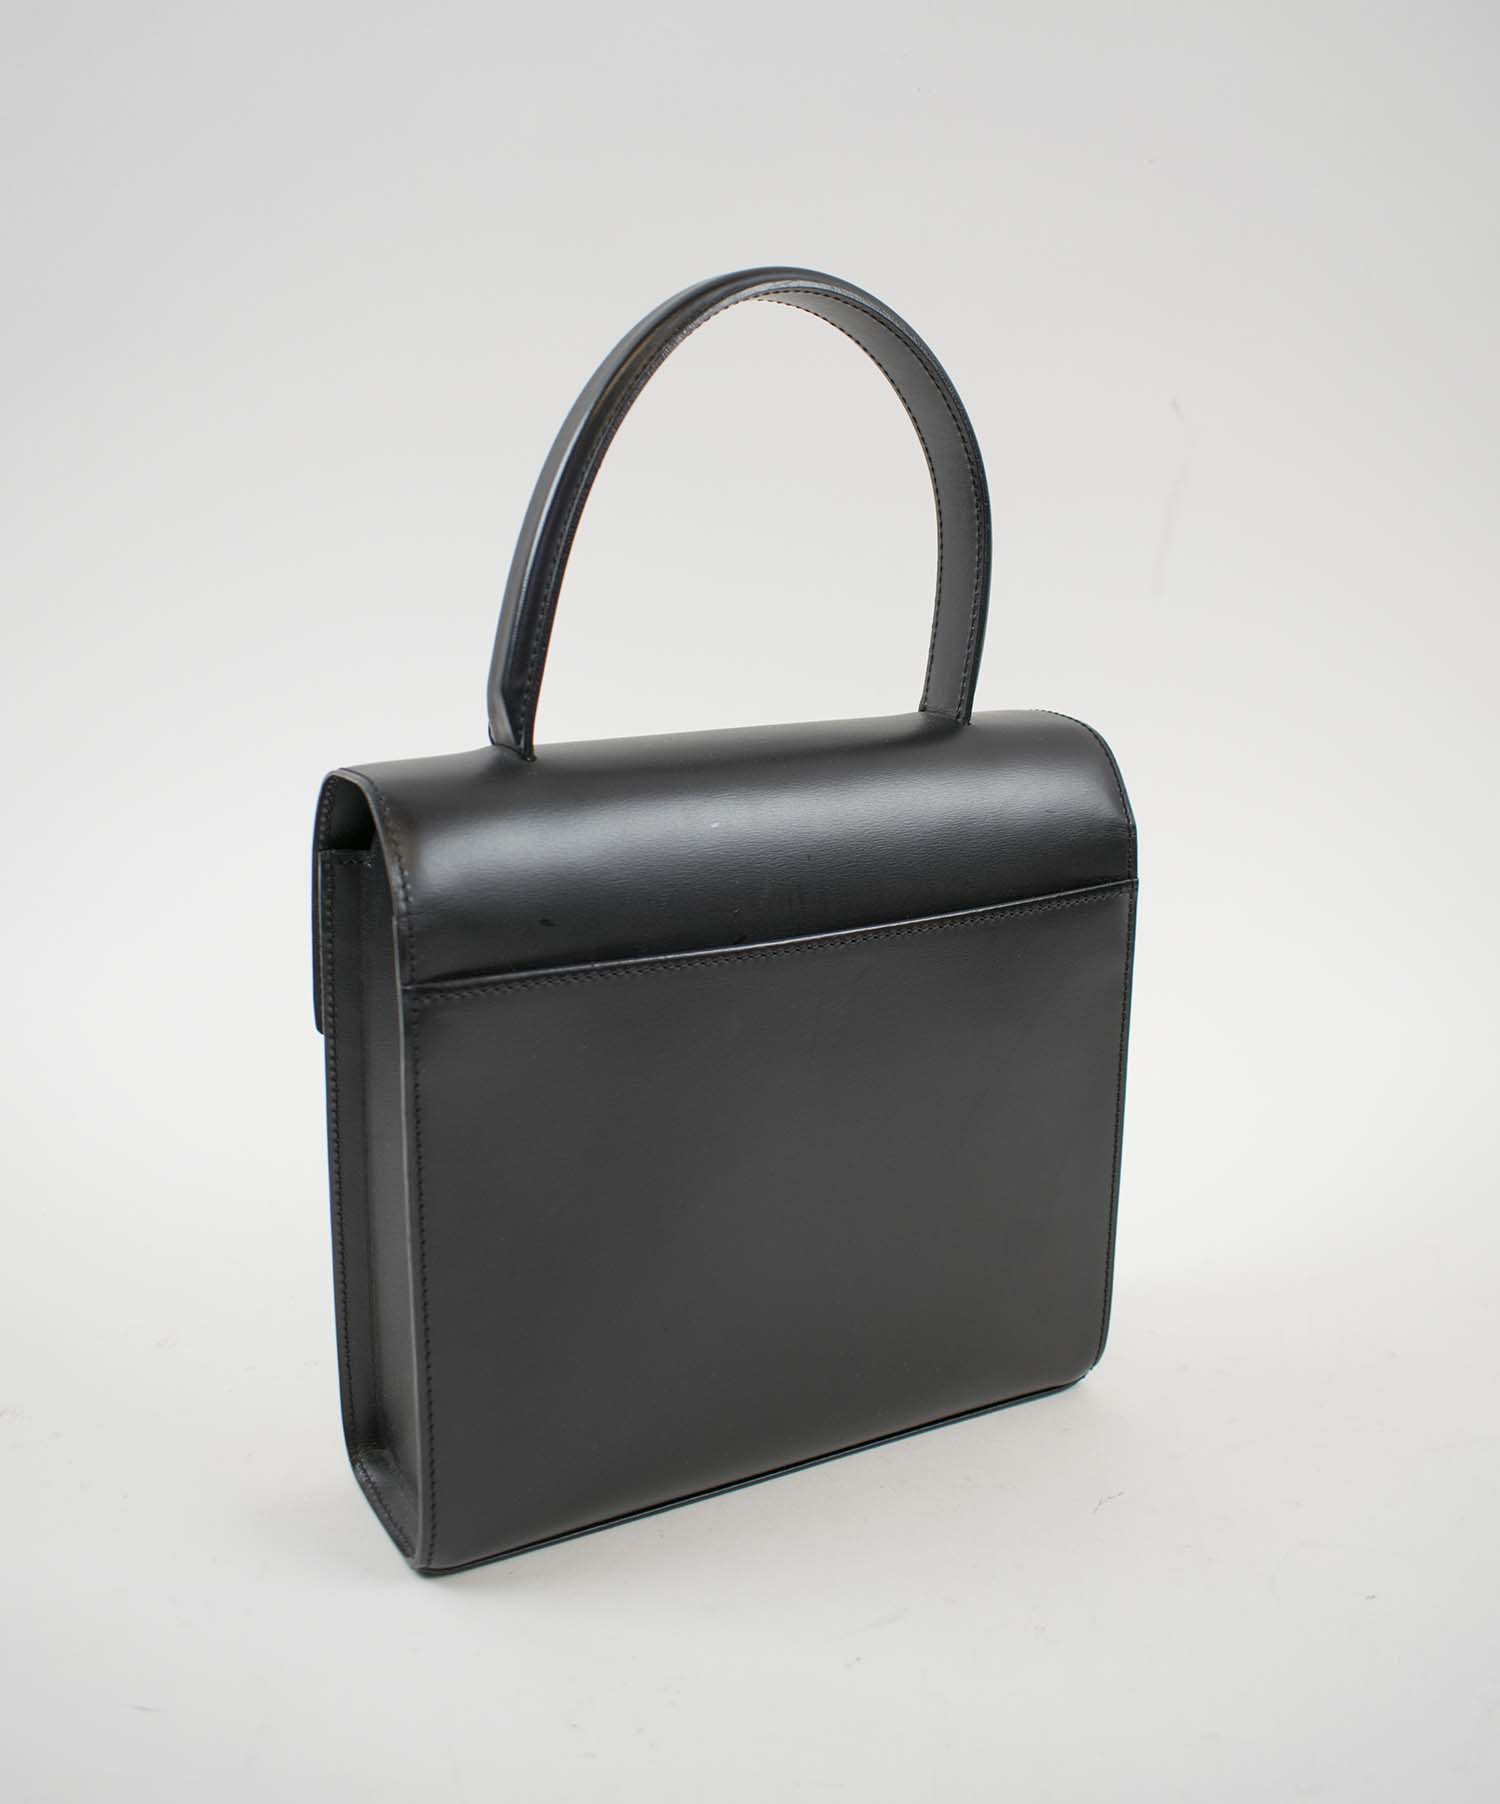 Lot - Vintage Givenchy Handbag Black Leather